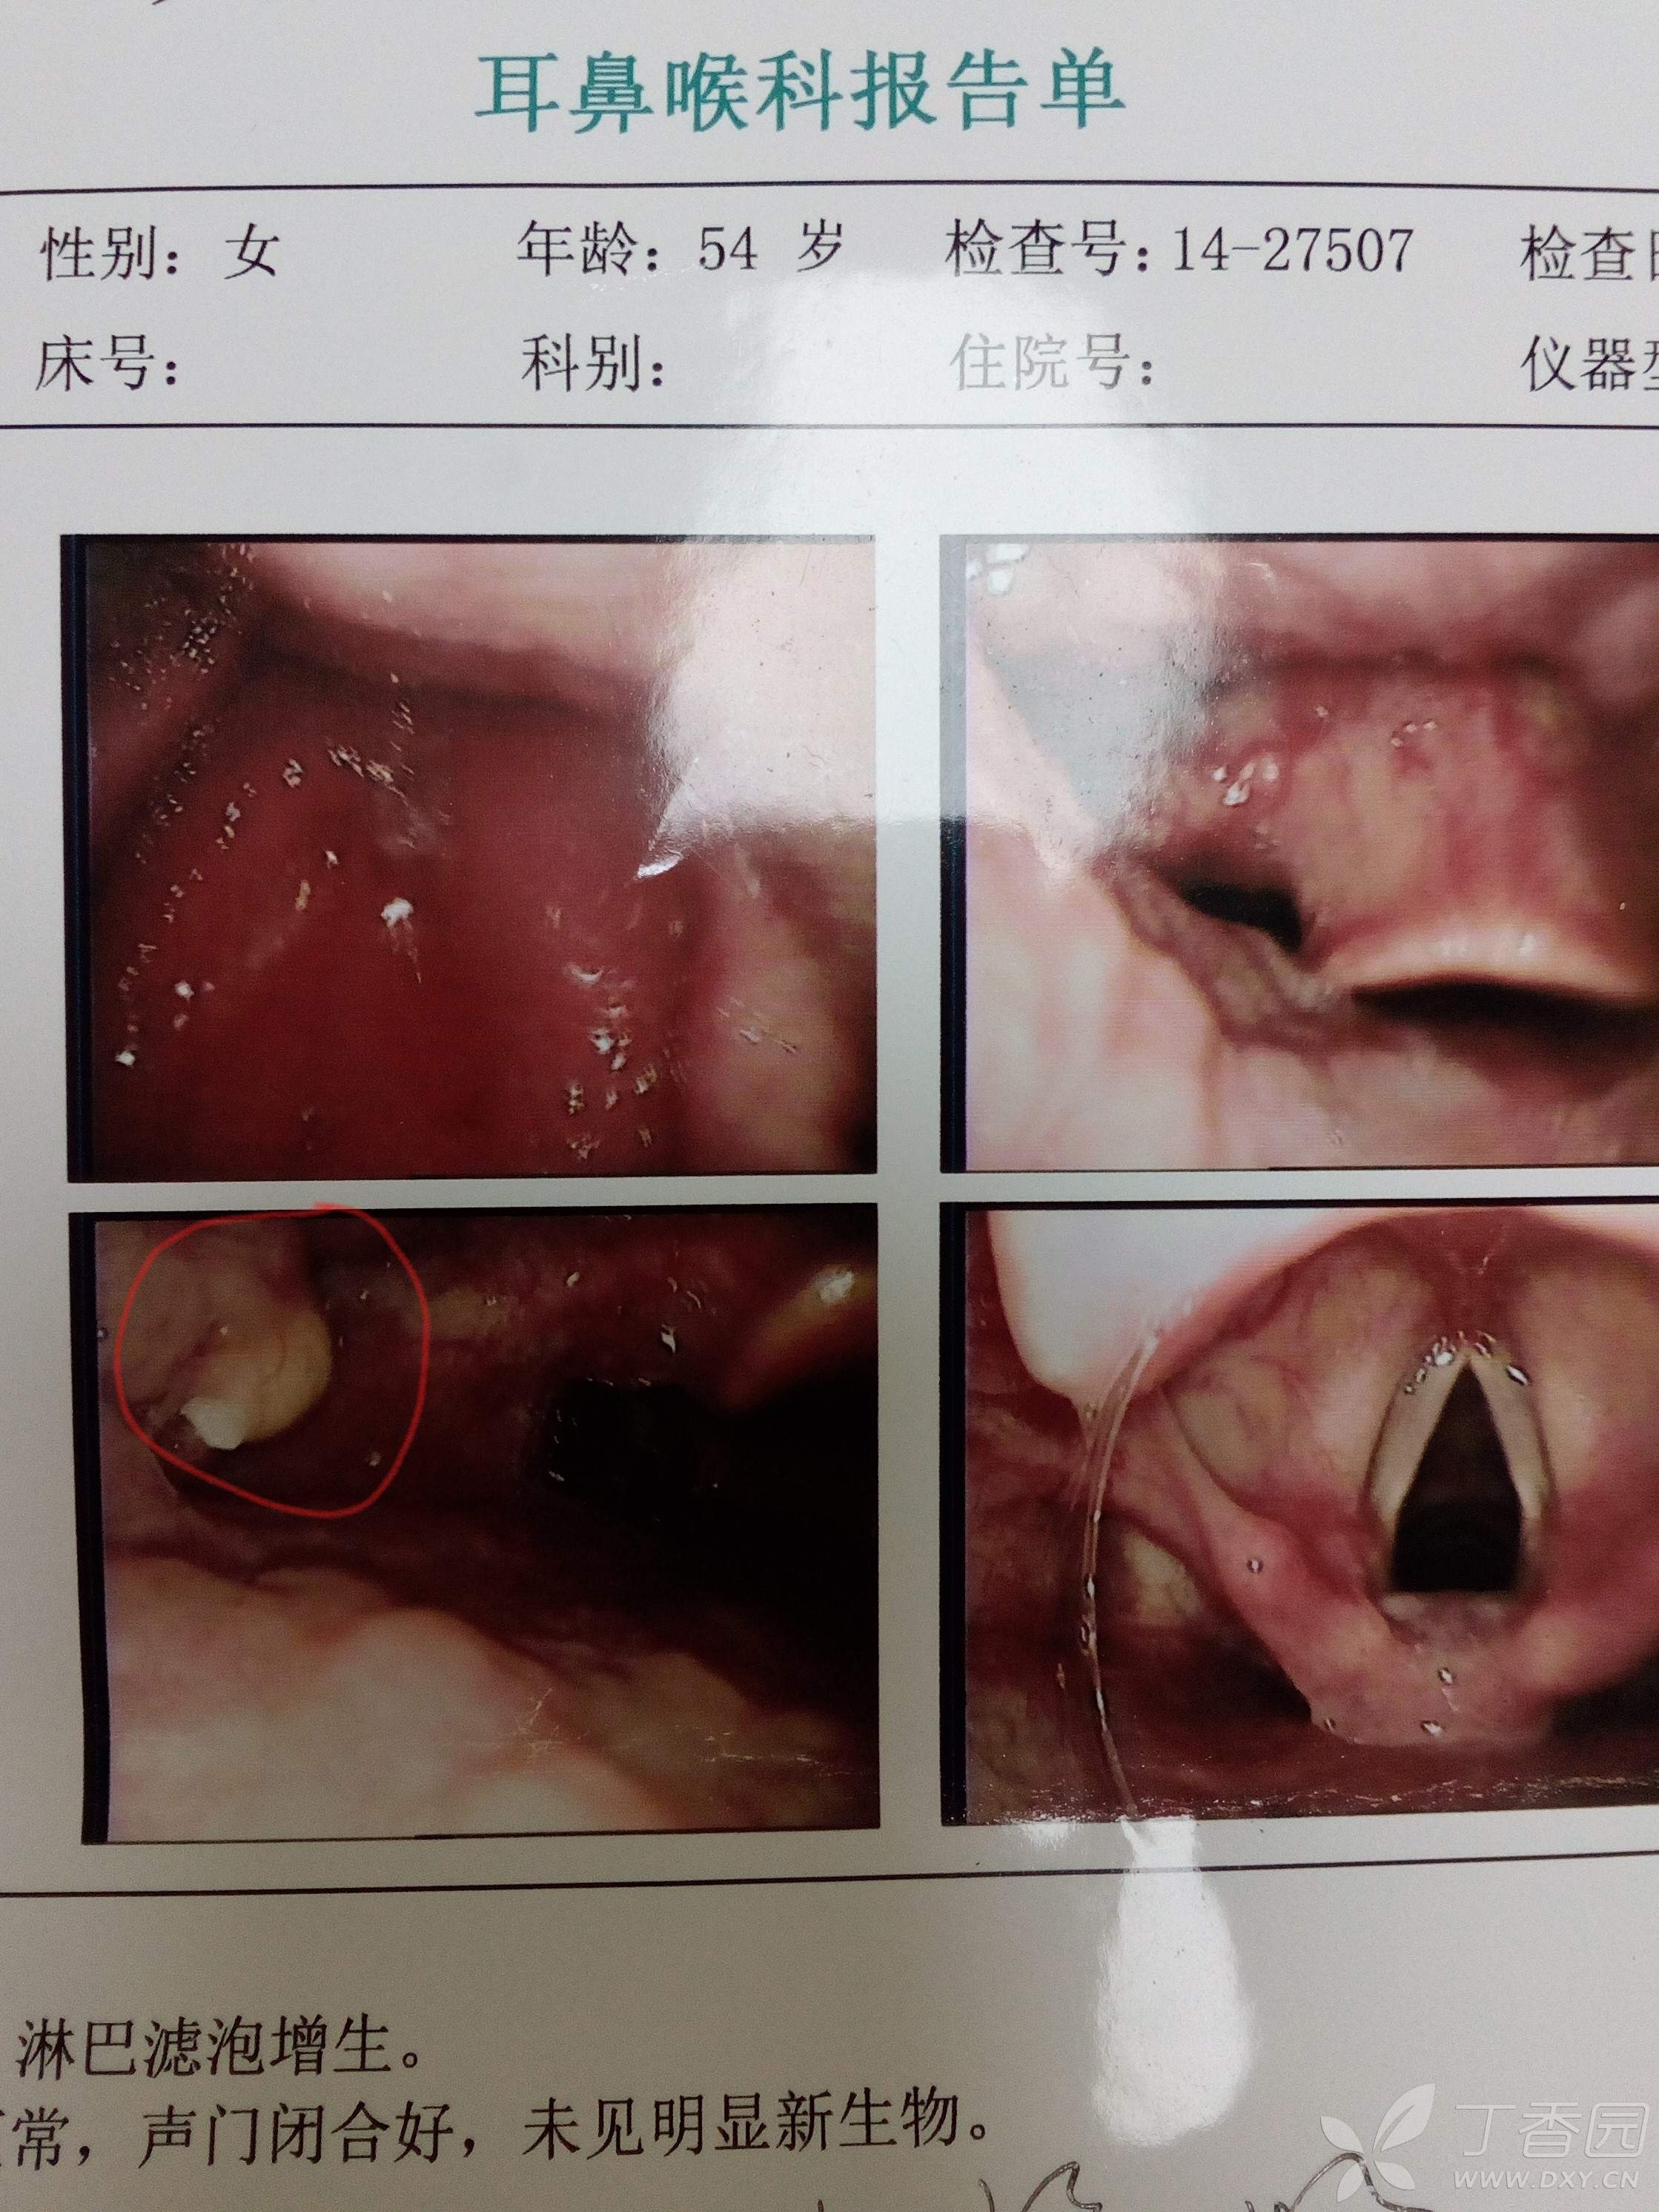 求助:咽部异物,偶有白色米粒状分泌物,附喉镜检查结果